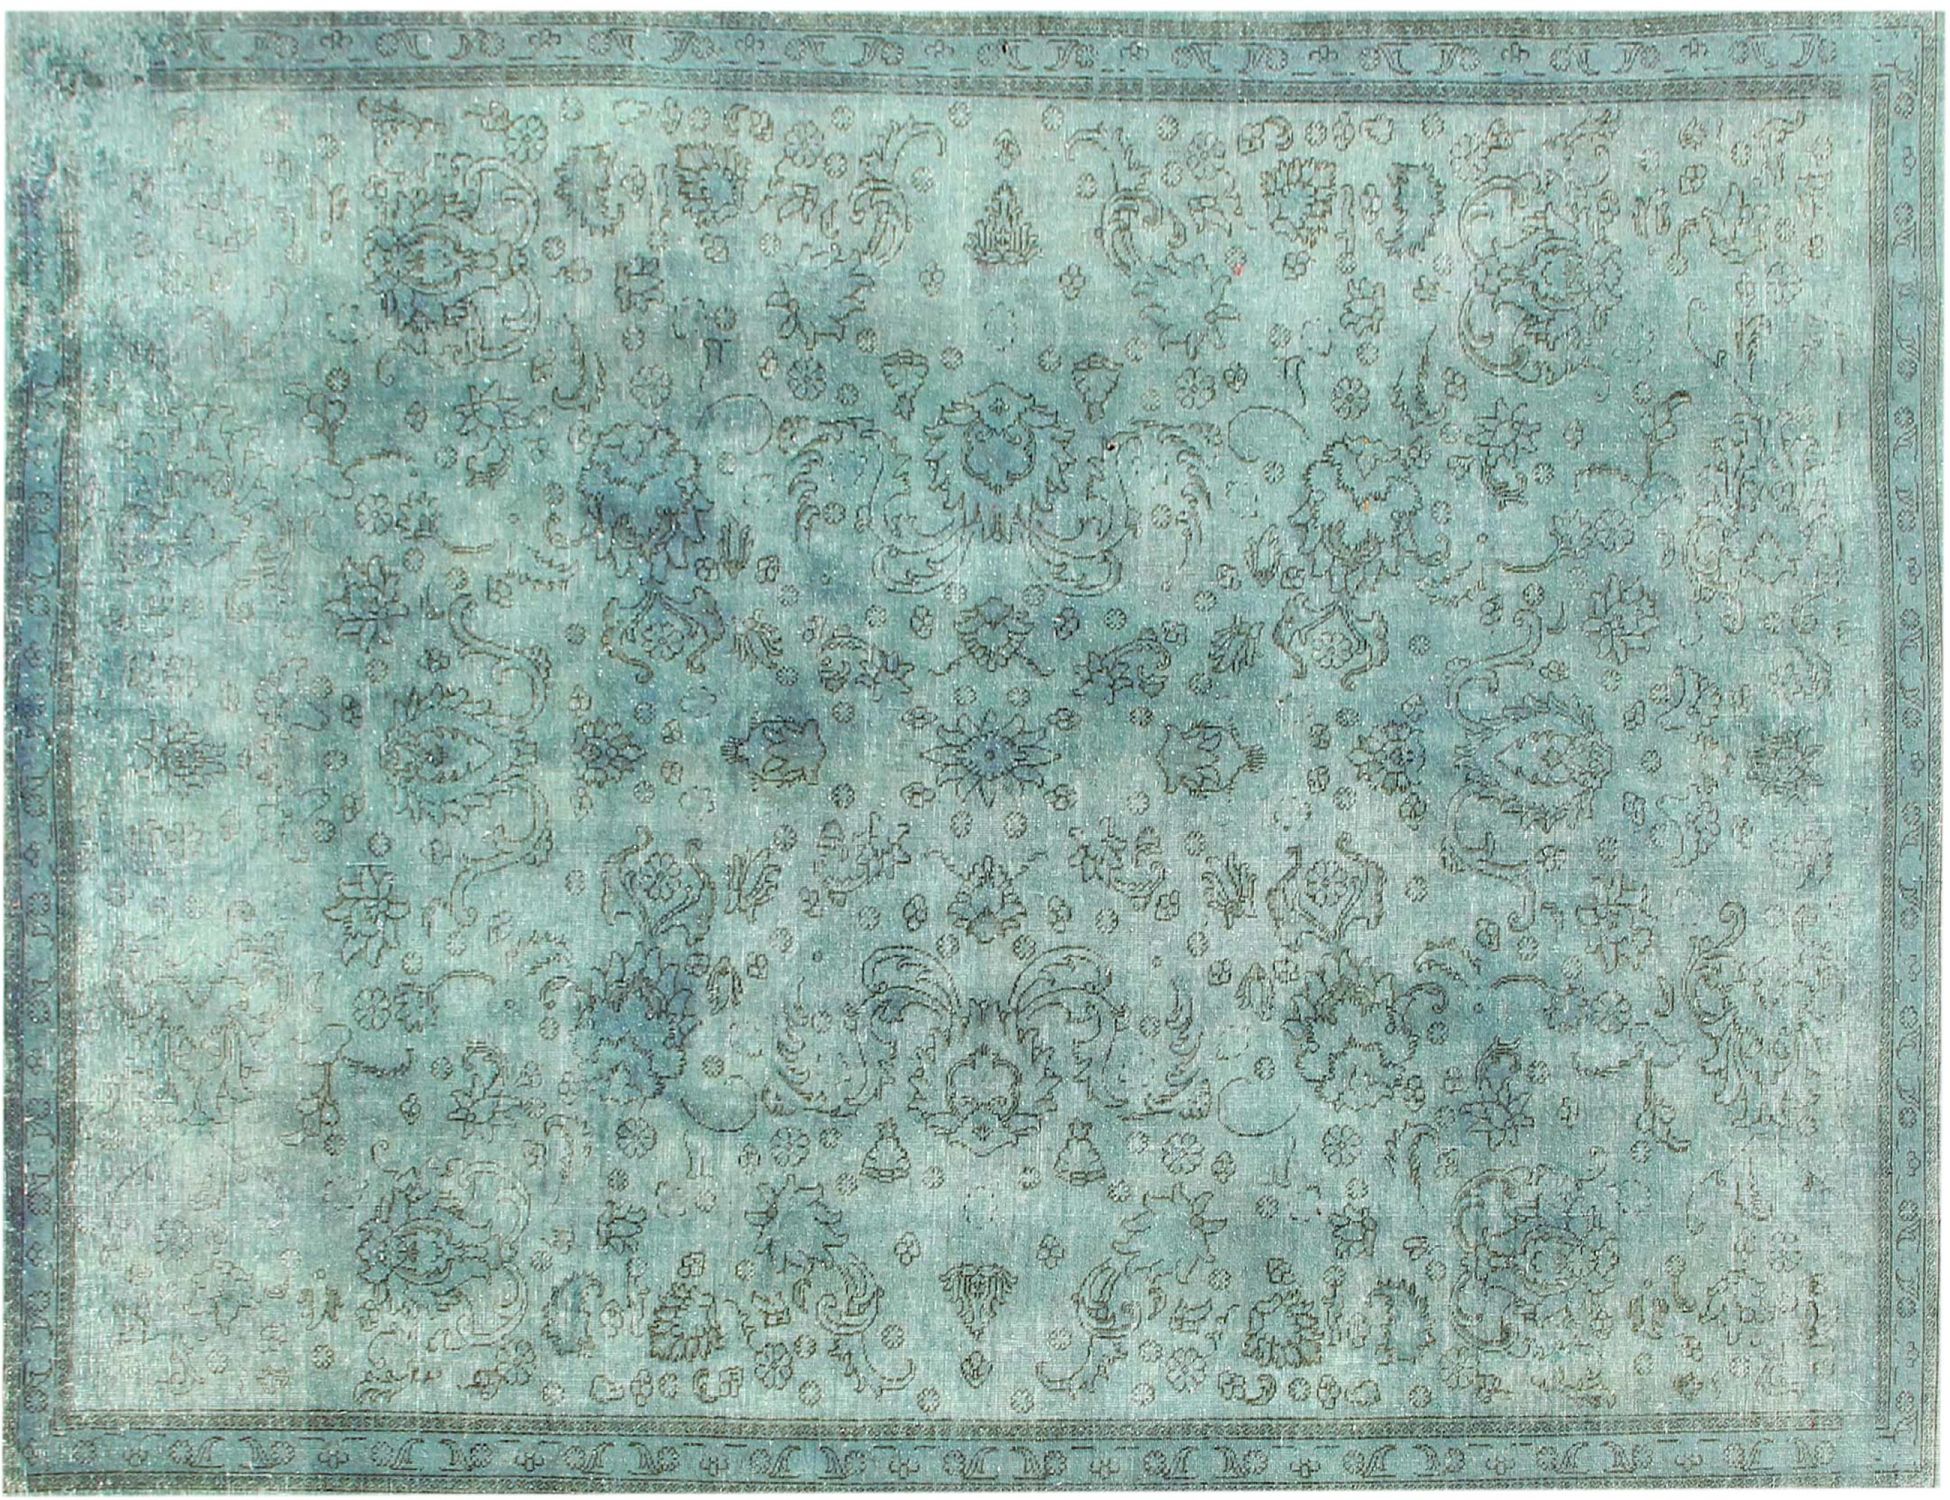 Persischer Vintage Teppich  grün <br/>316 x 230 cm